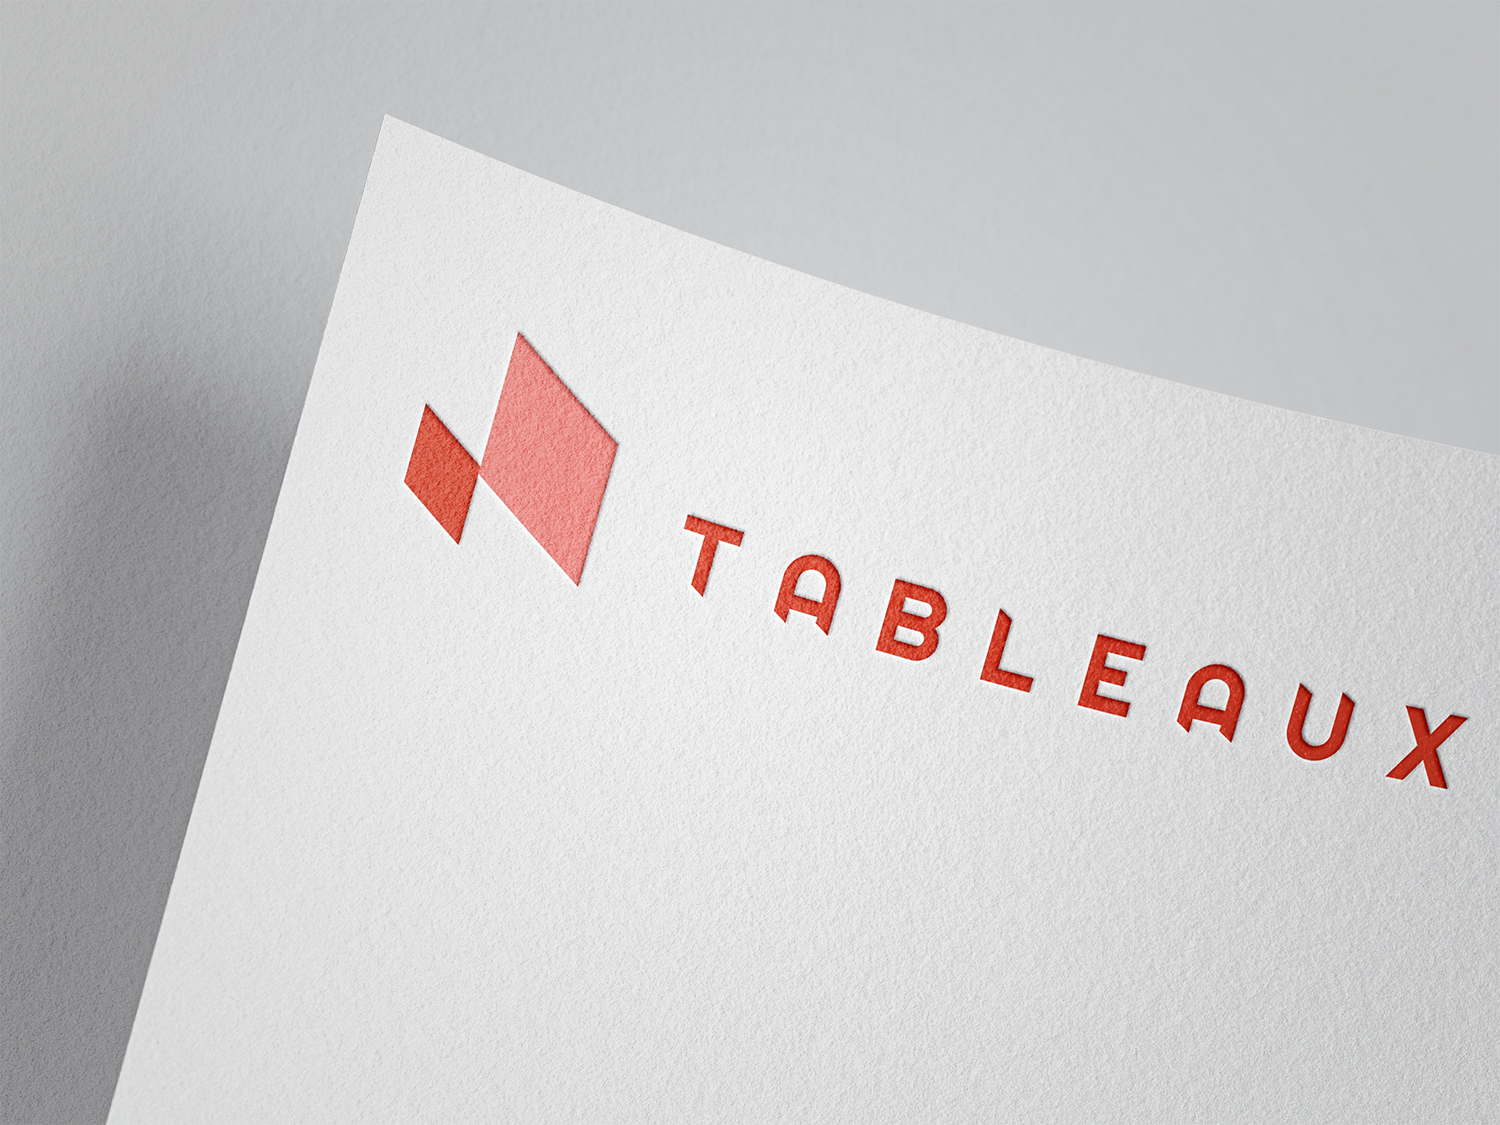 Tableaux Film Company Branding